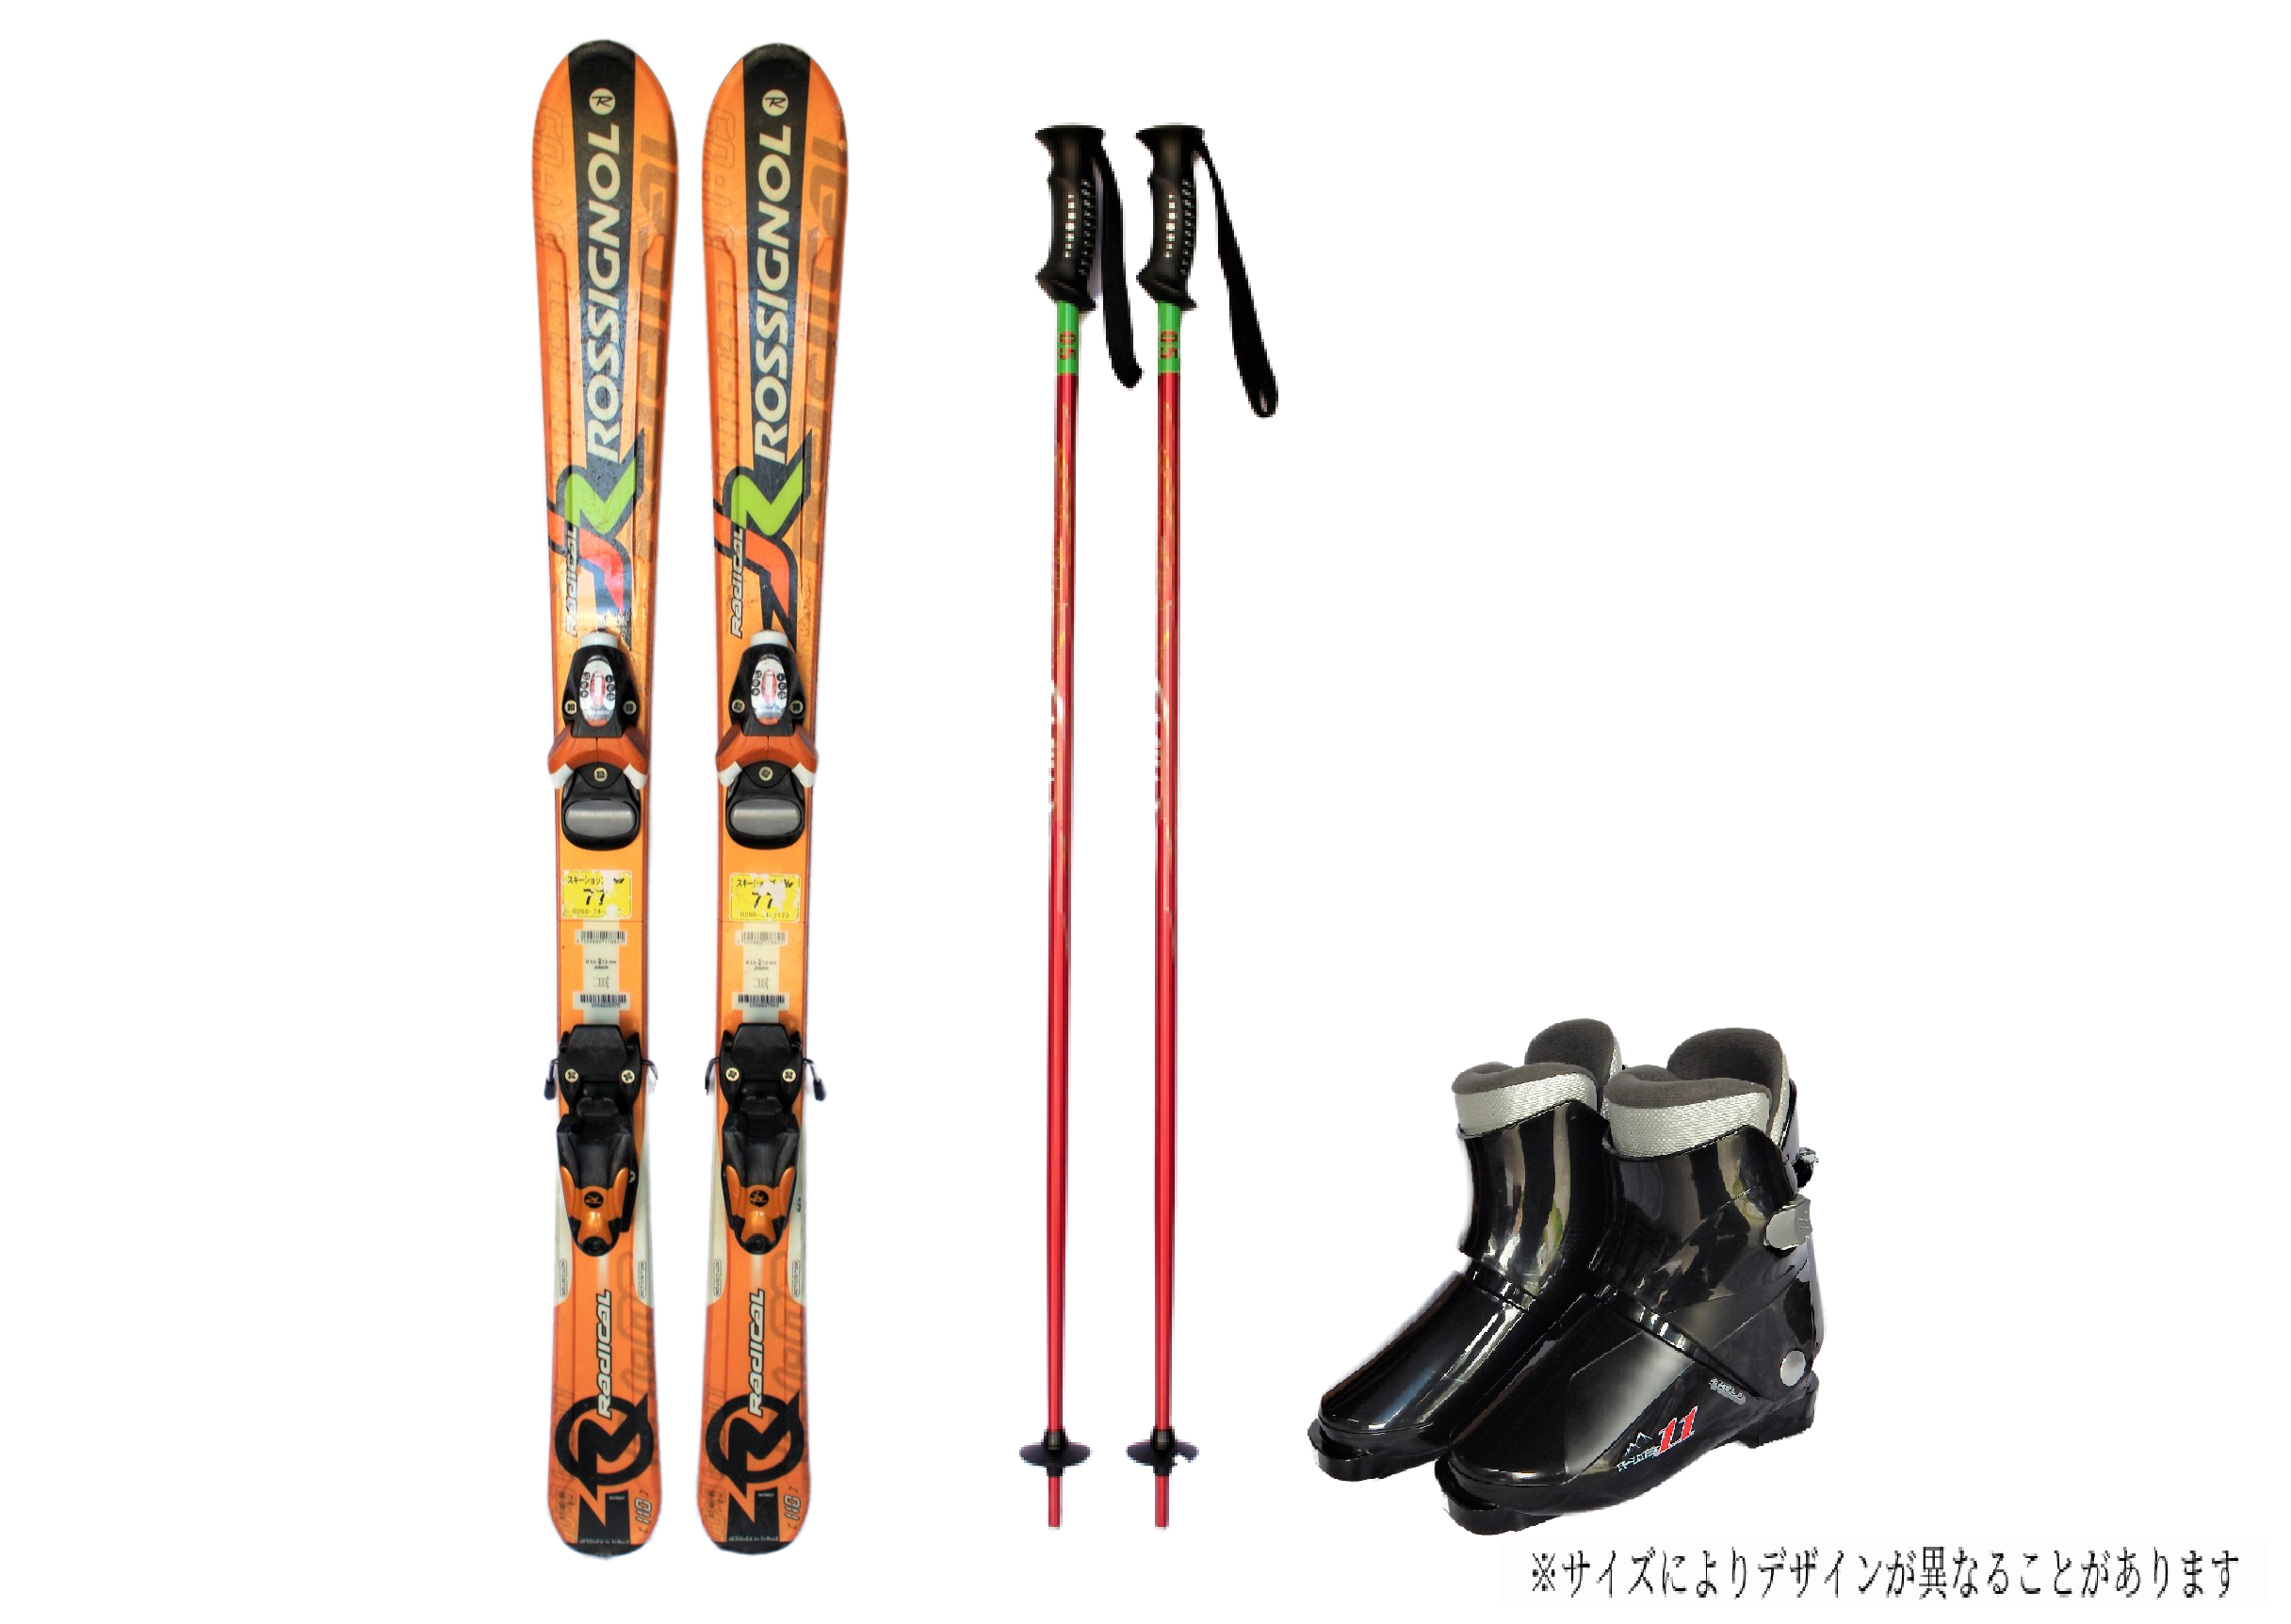 【4月開催スキー・スノーボードツアー】レンタルスキー・レンタルスノーボード申込ページ